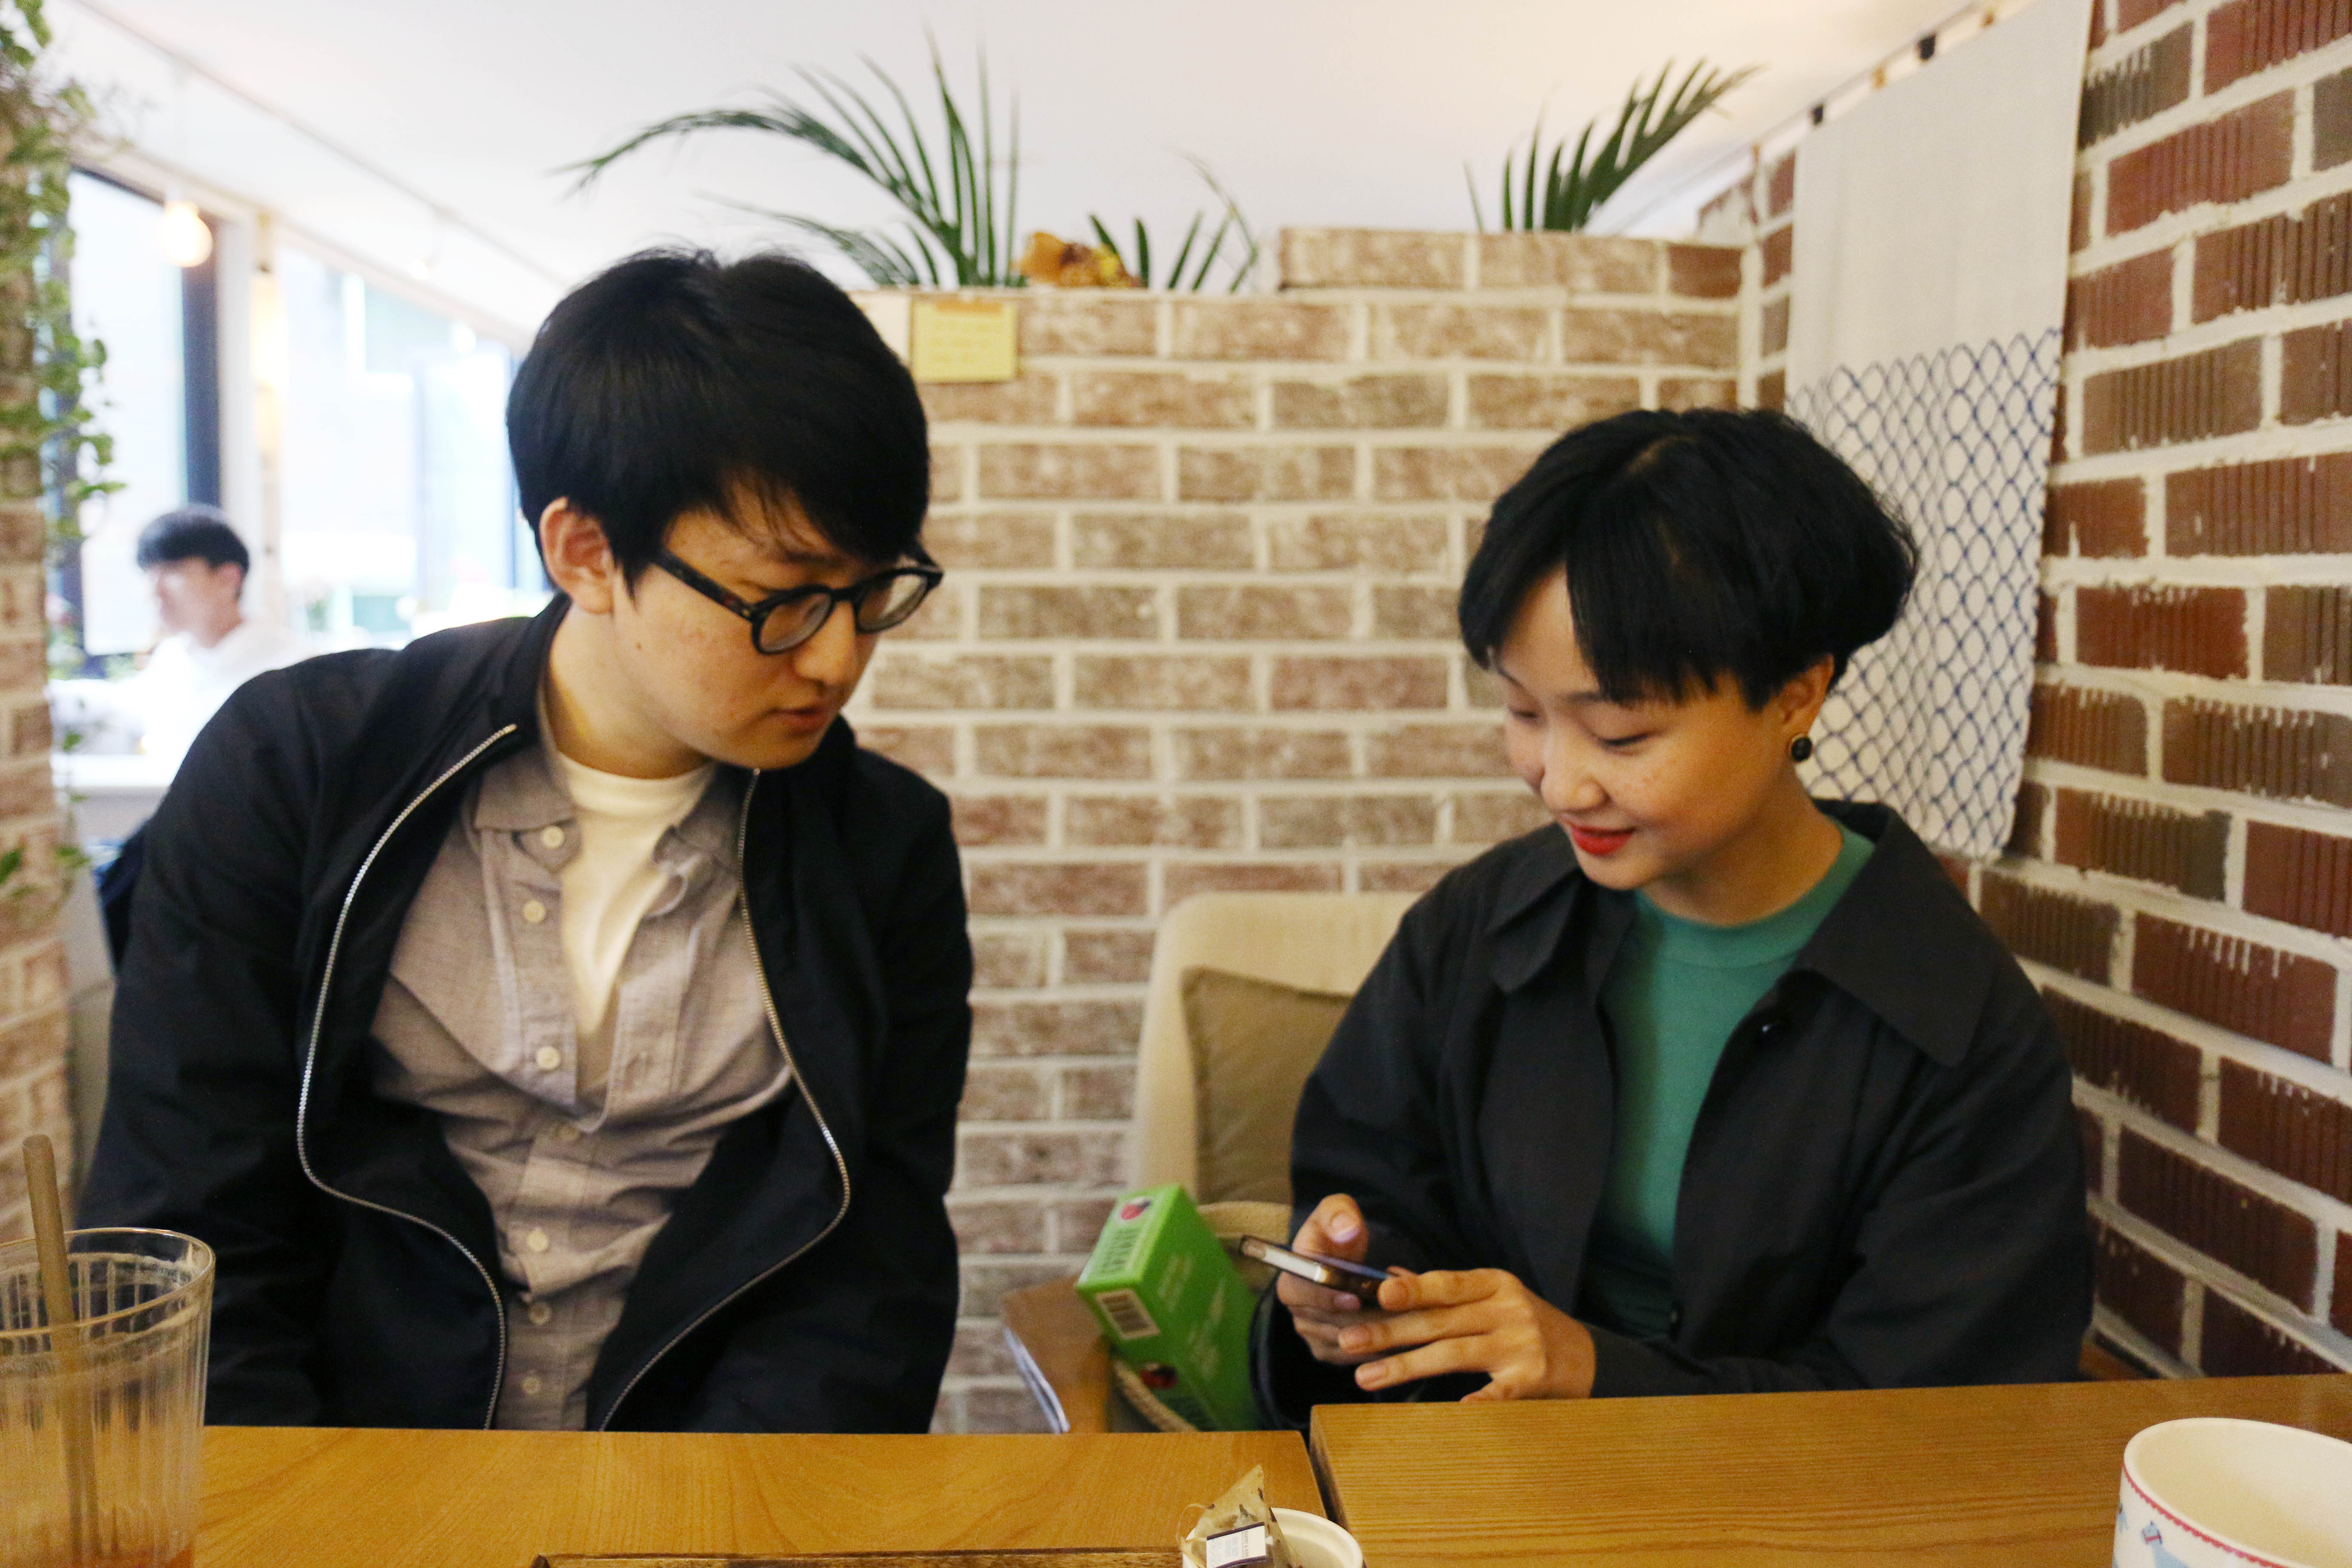 ▲  지난 5월3일 합정역 근처 카페에서 두 사람을 만났다. 왼쪽 박현우, 오른쪽 이슬아.